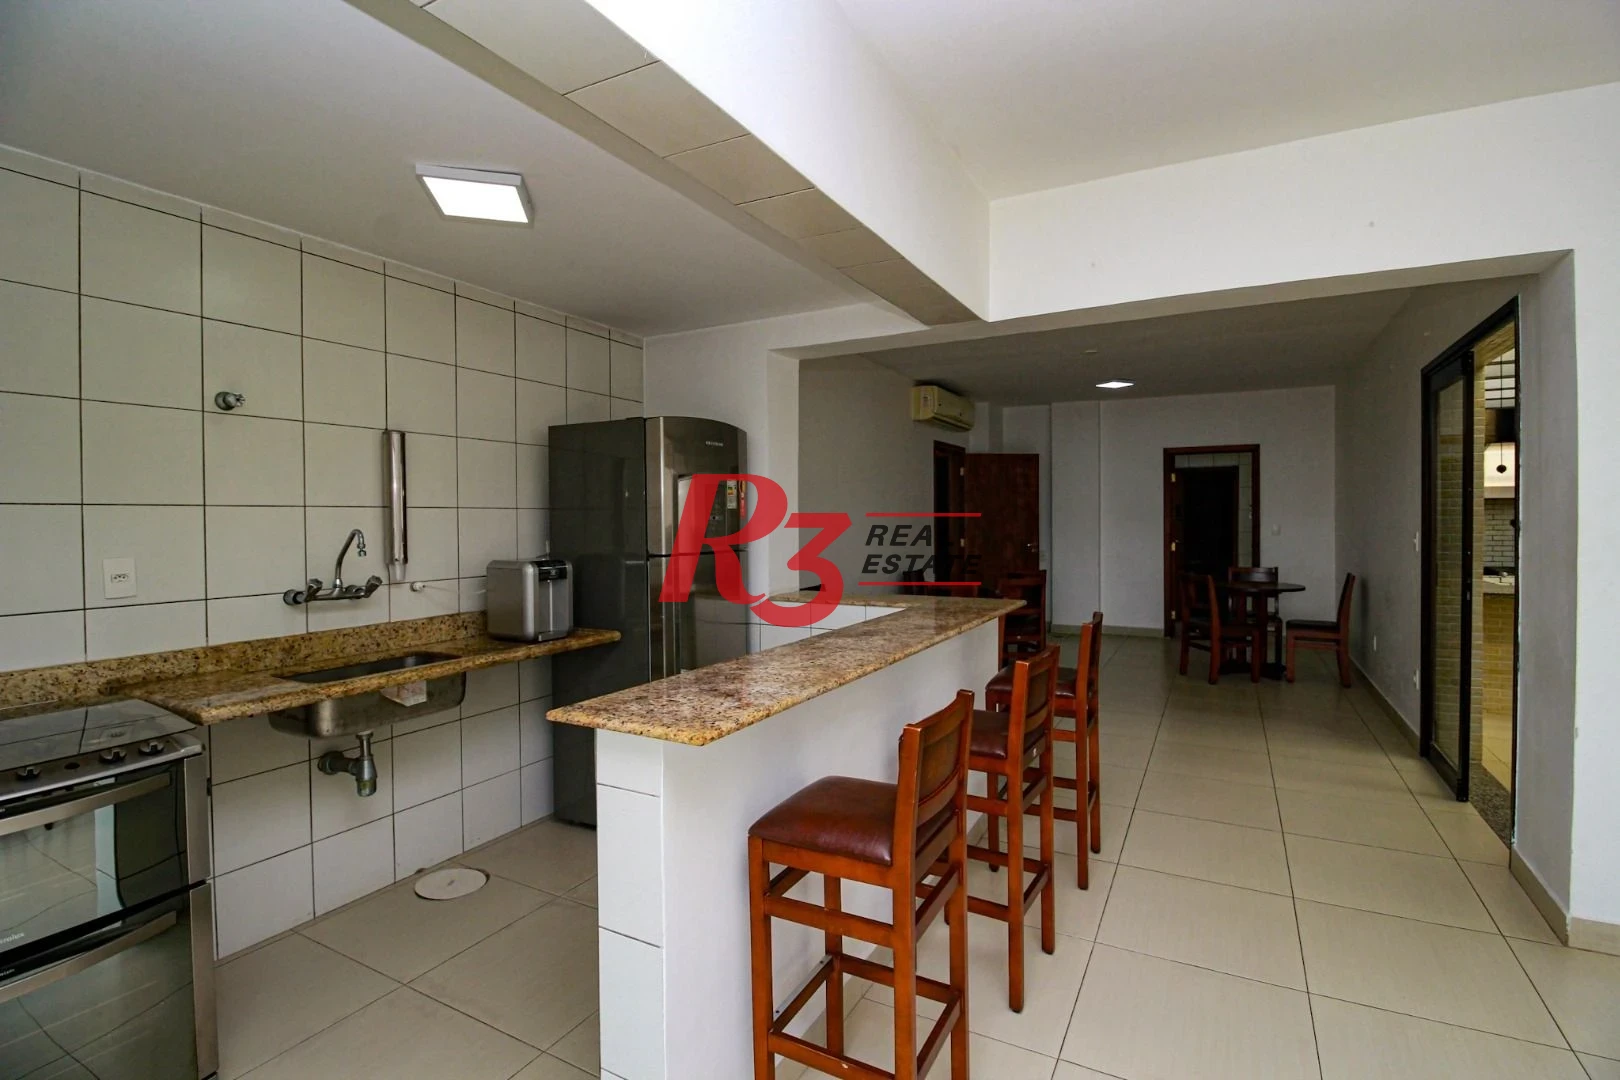 Apartamento á venda  3 dormitórios 2 Vgs Boqueirão Santos